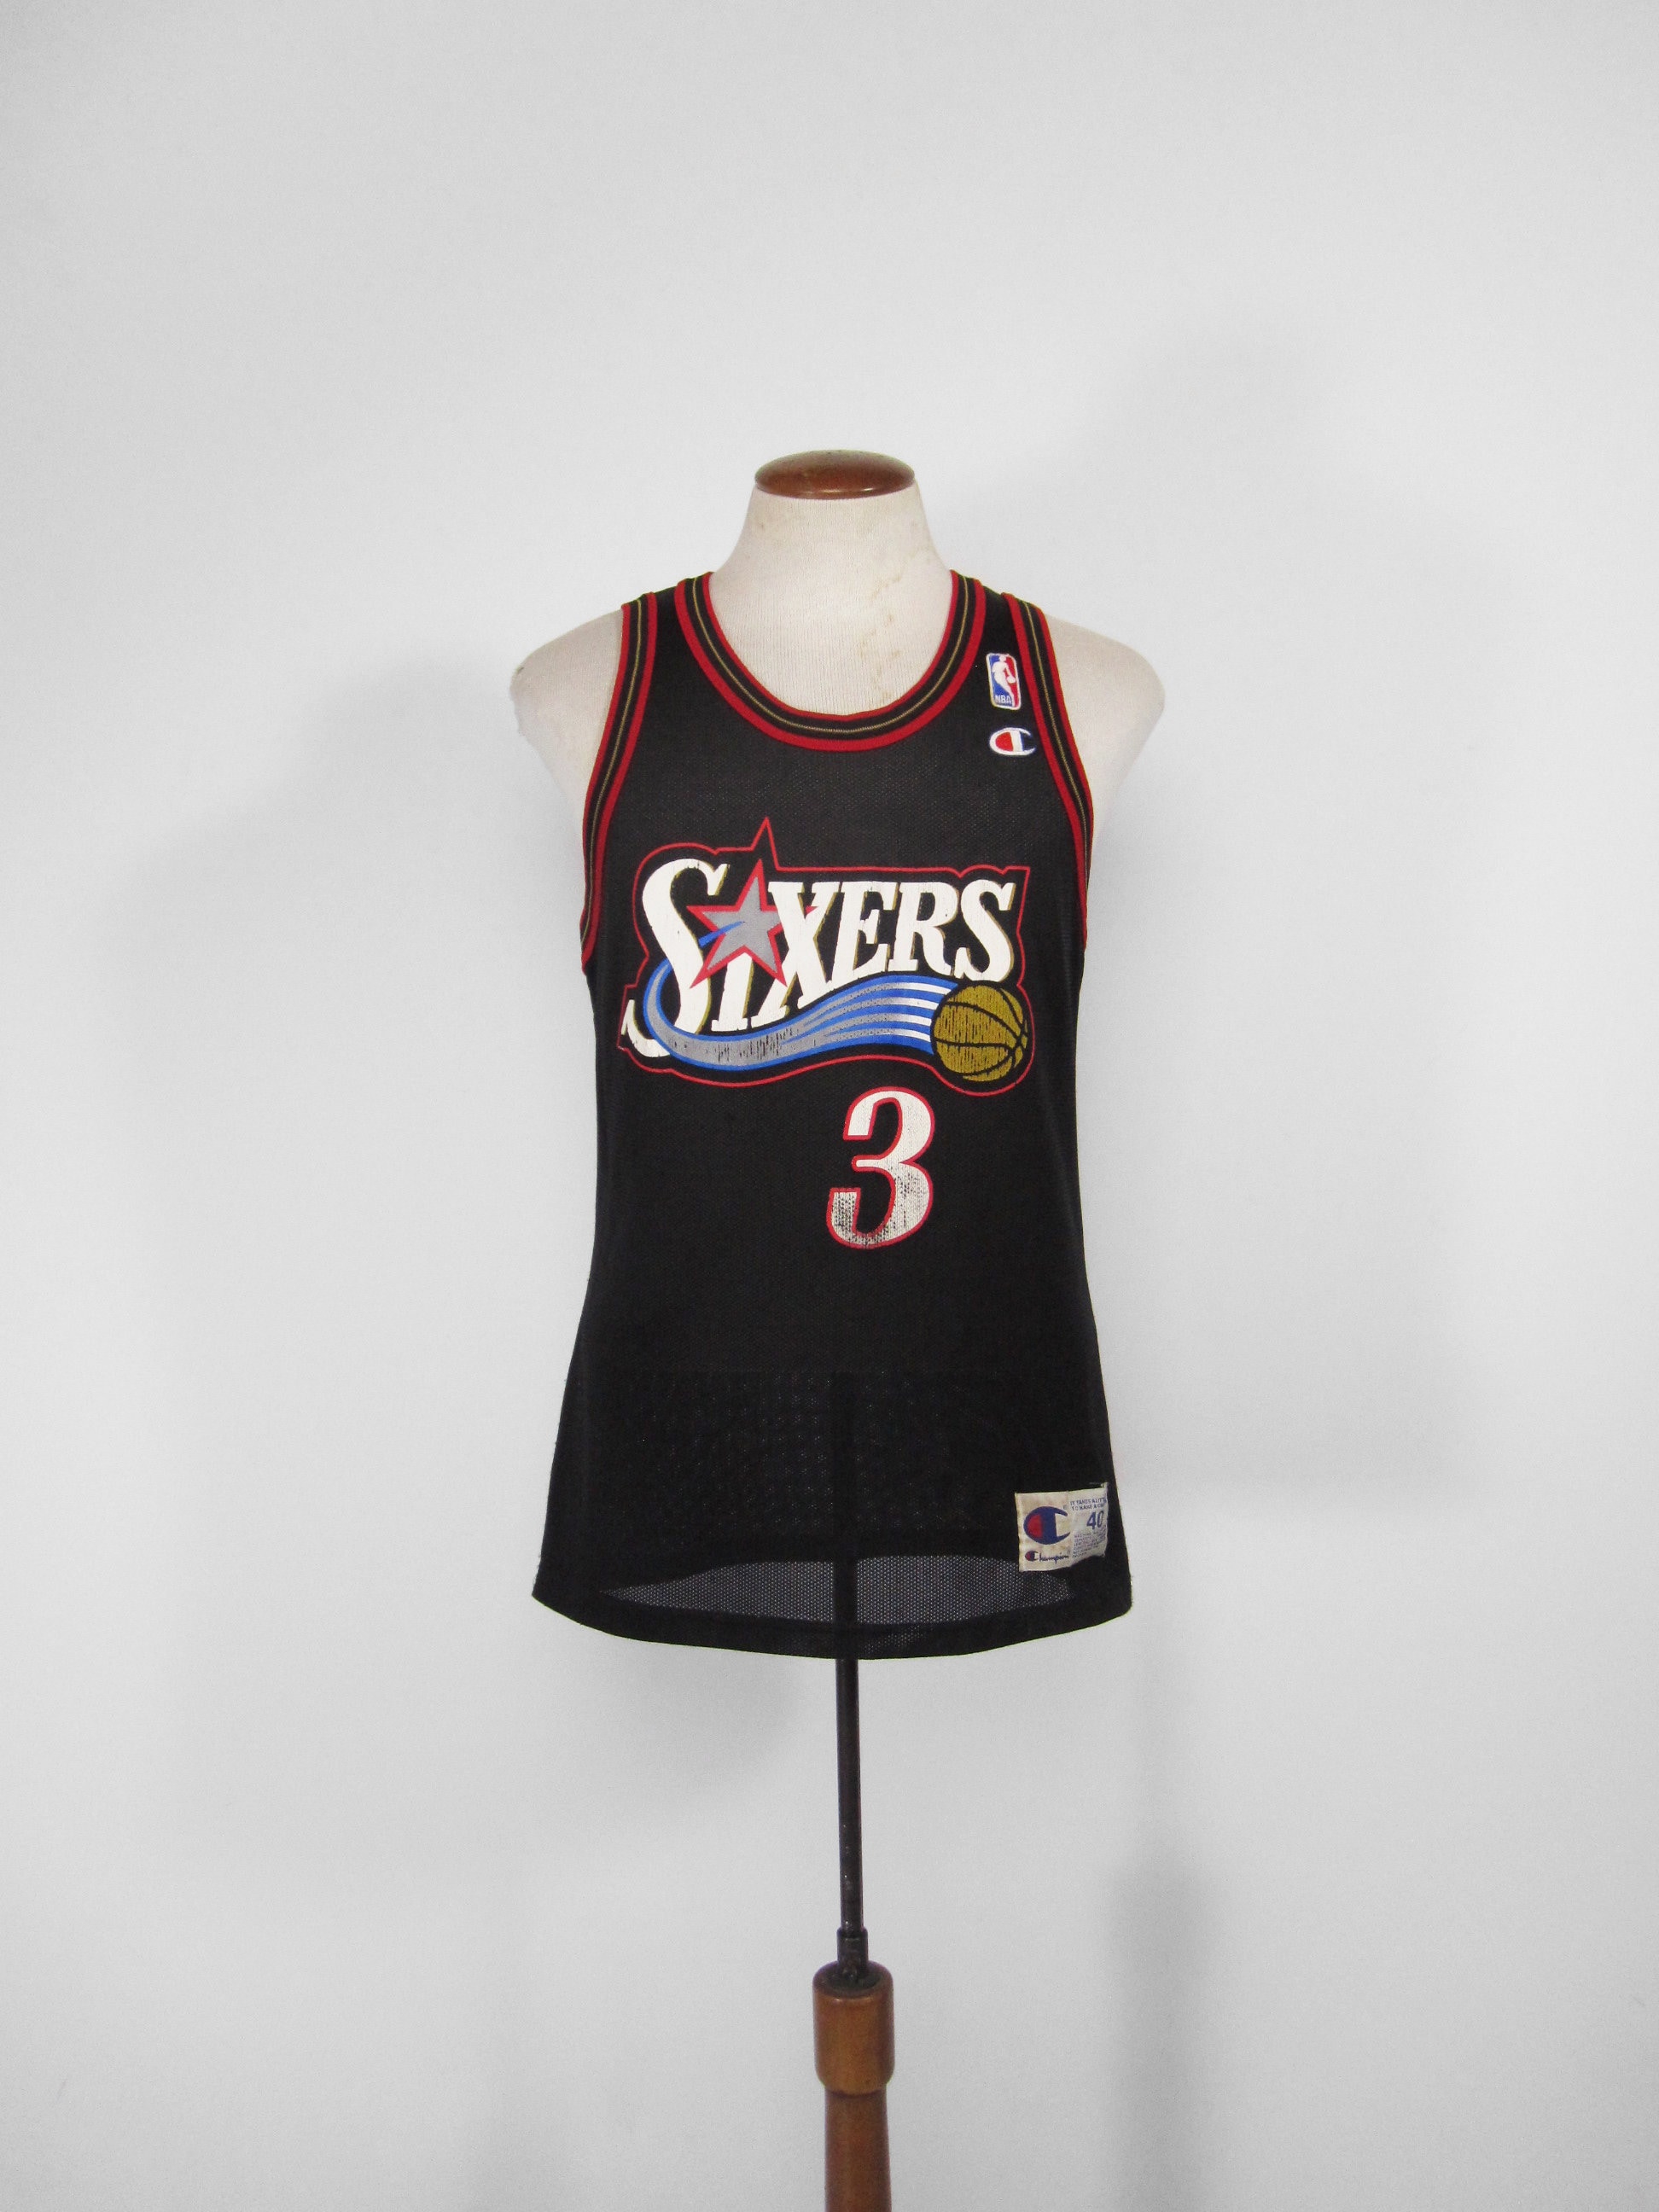 Vintage Champion Allen Iverson Jersey Philadelphia Sixers 76ers Size 44 L  Black